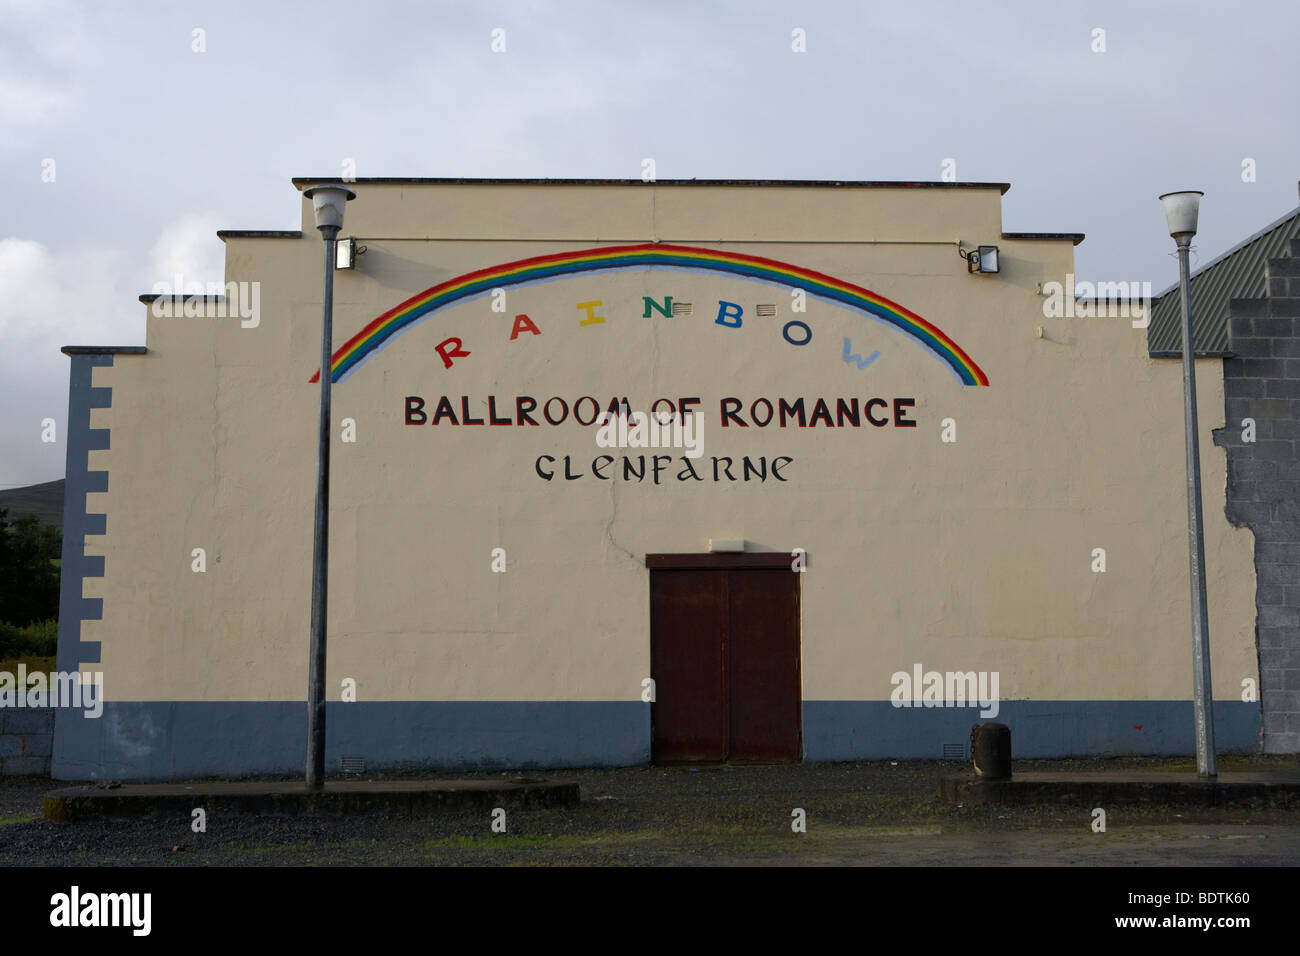 L'Arcobaleno sala da ballo del romanticismo in Glenfarne county leitrim Repubblica di Irlanda Foto Stock